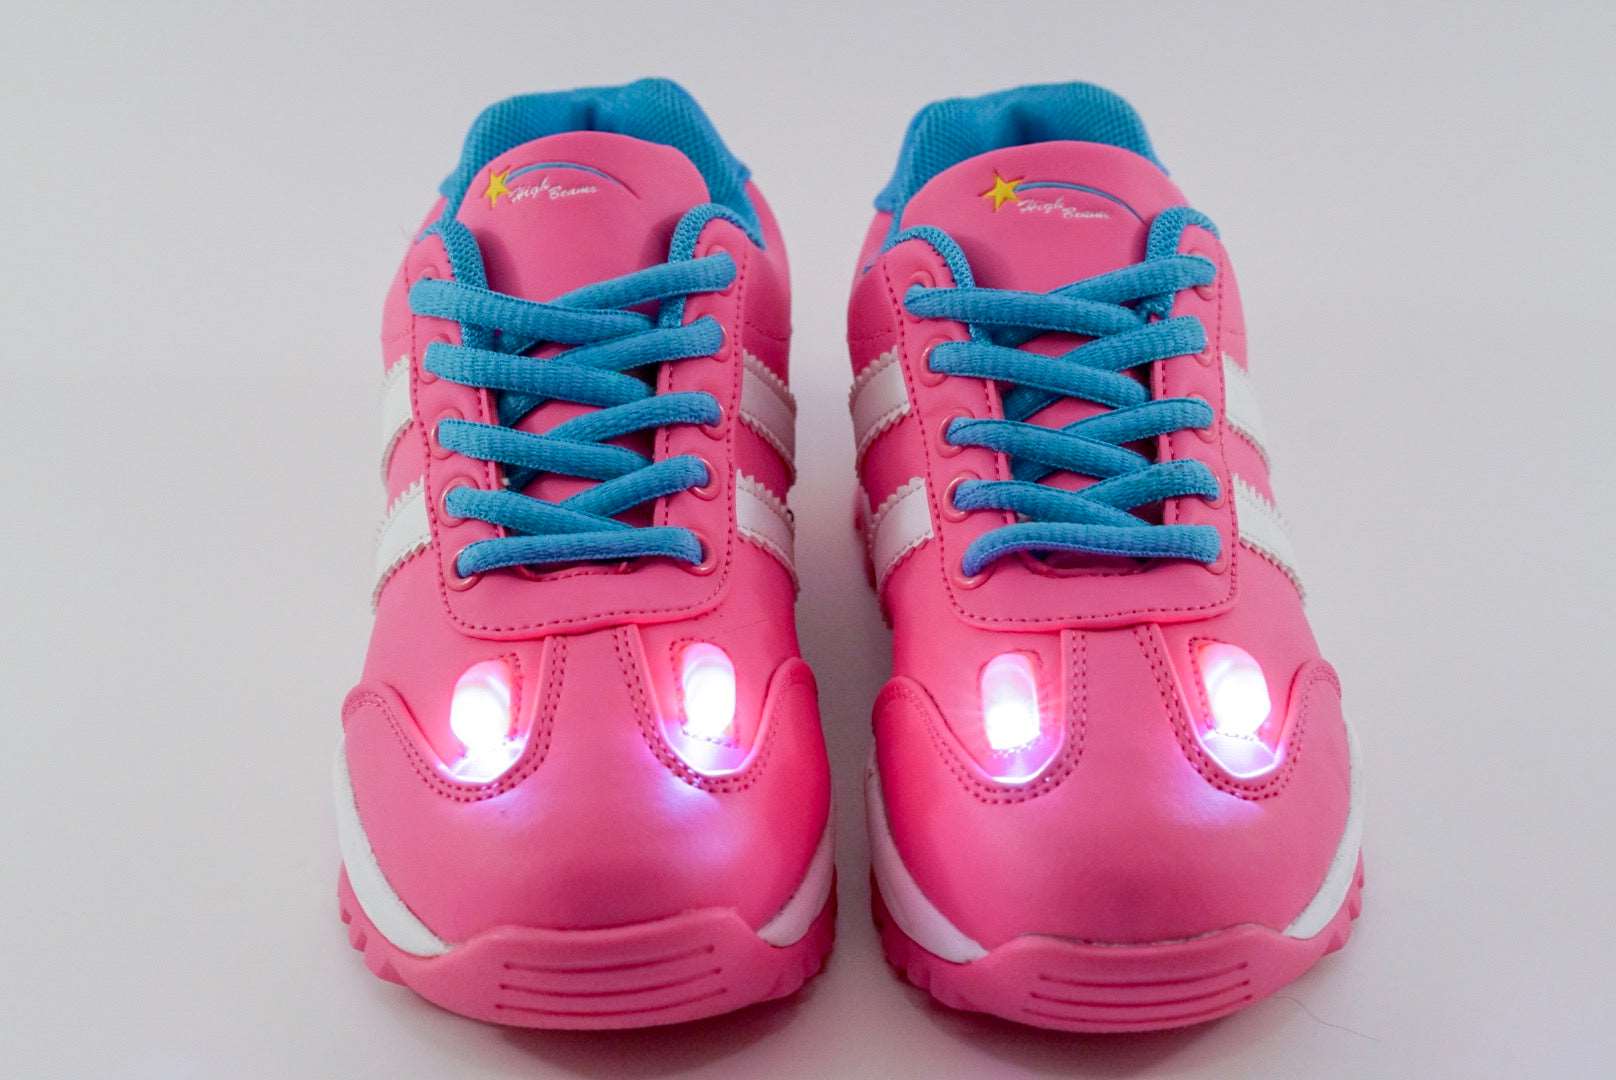 Nfin8 Starlight Adventure - Girls High Beam Light Up Shoes